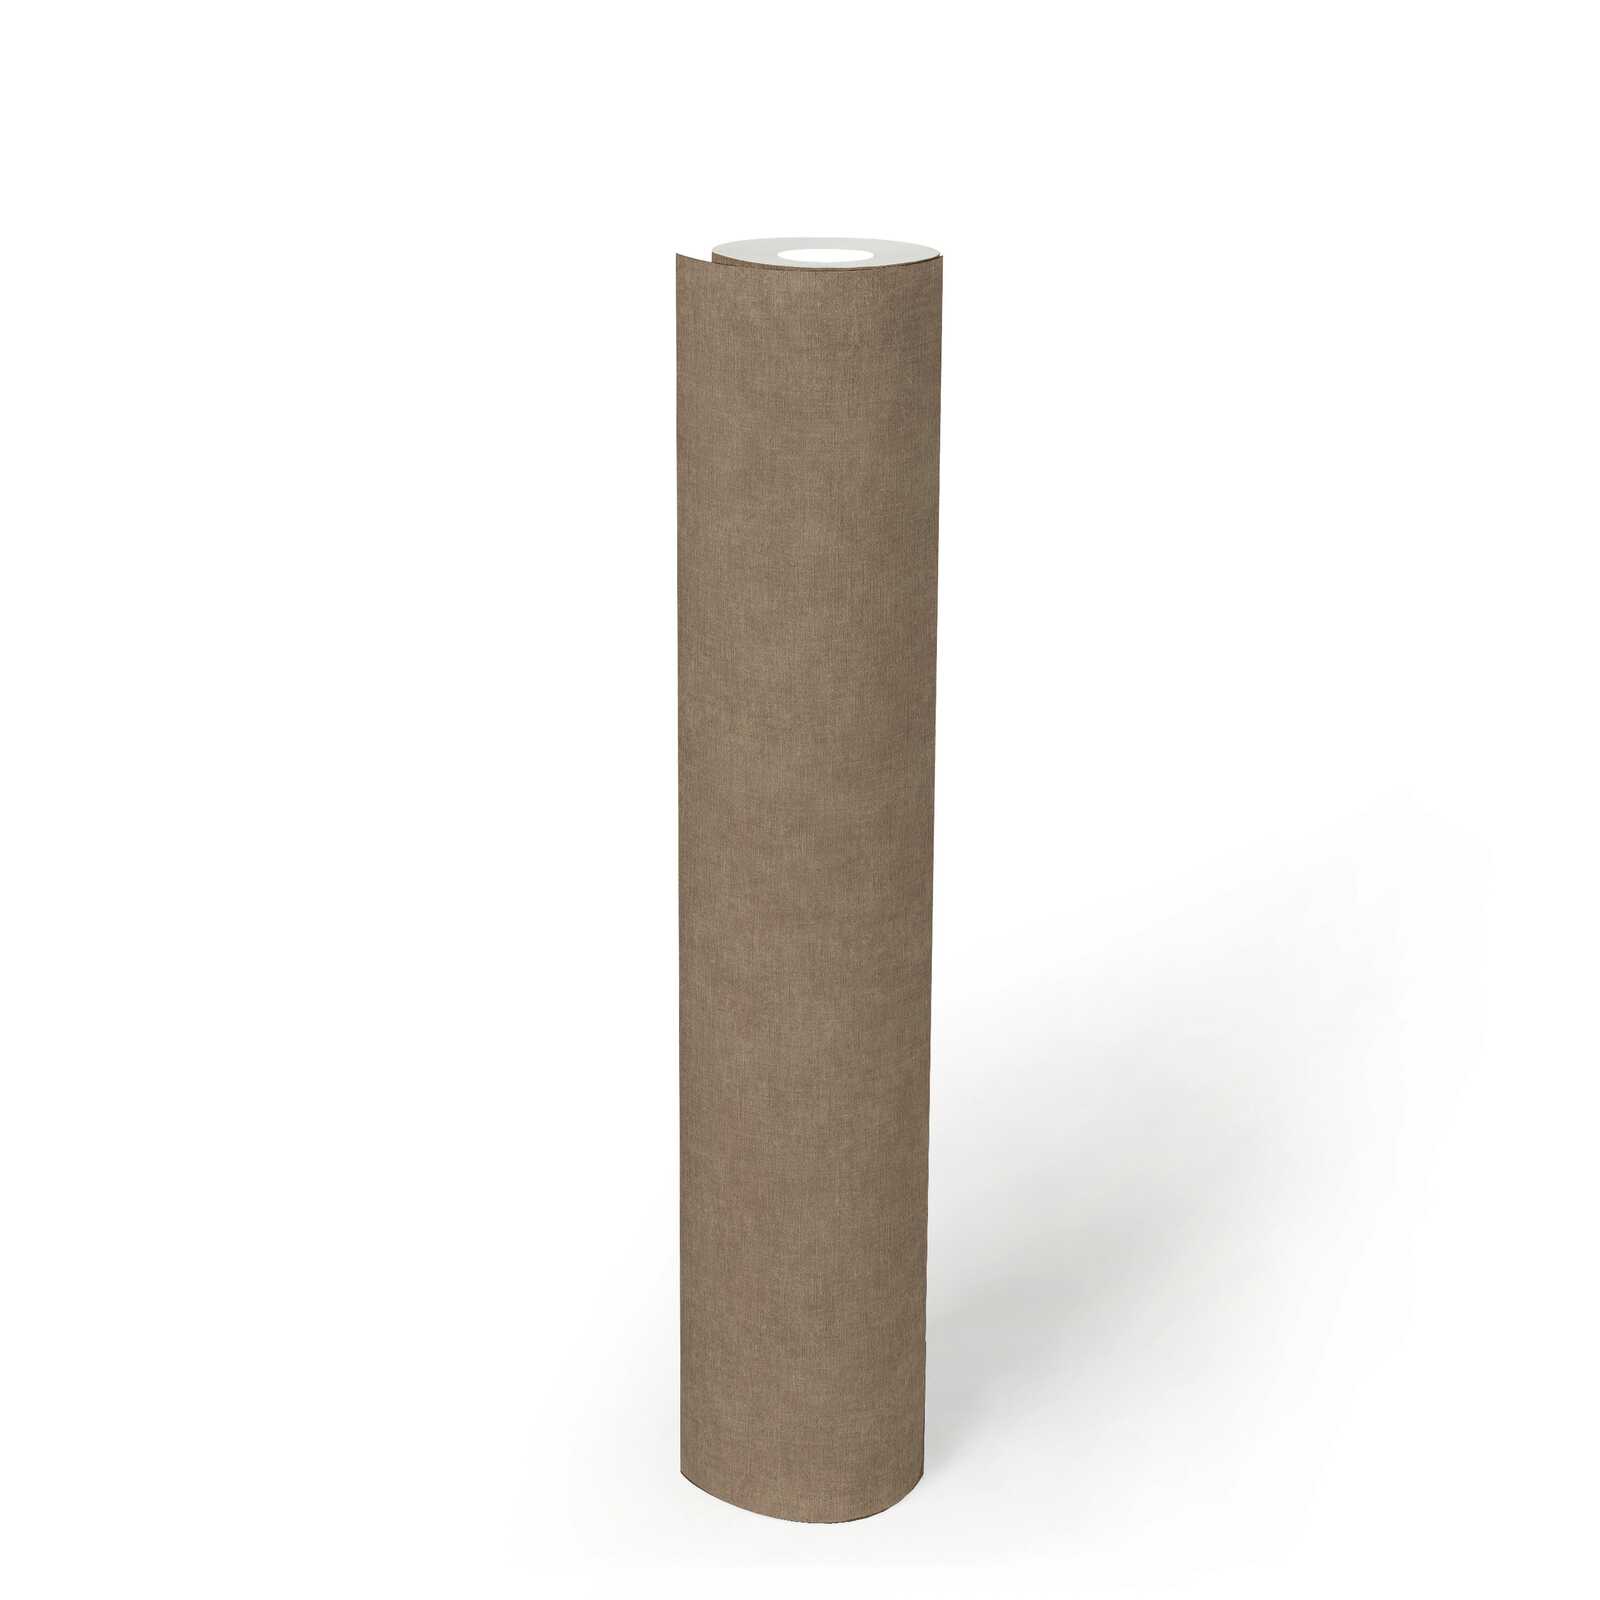             papier peint en papier intissé uni aspect textile - marron, beige
        